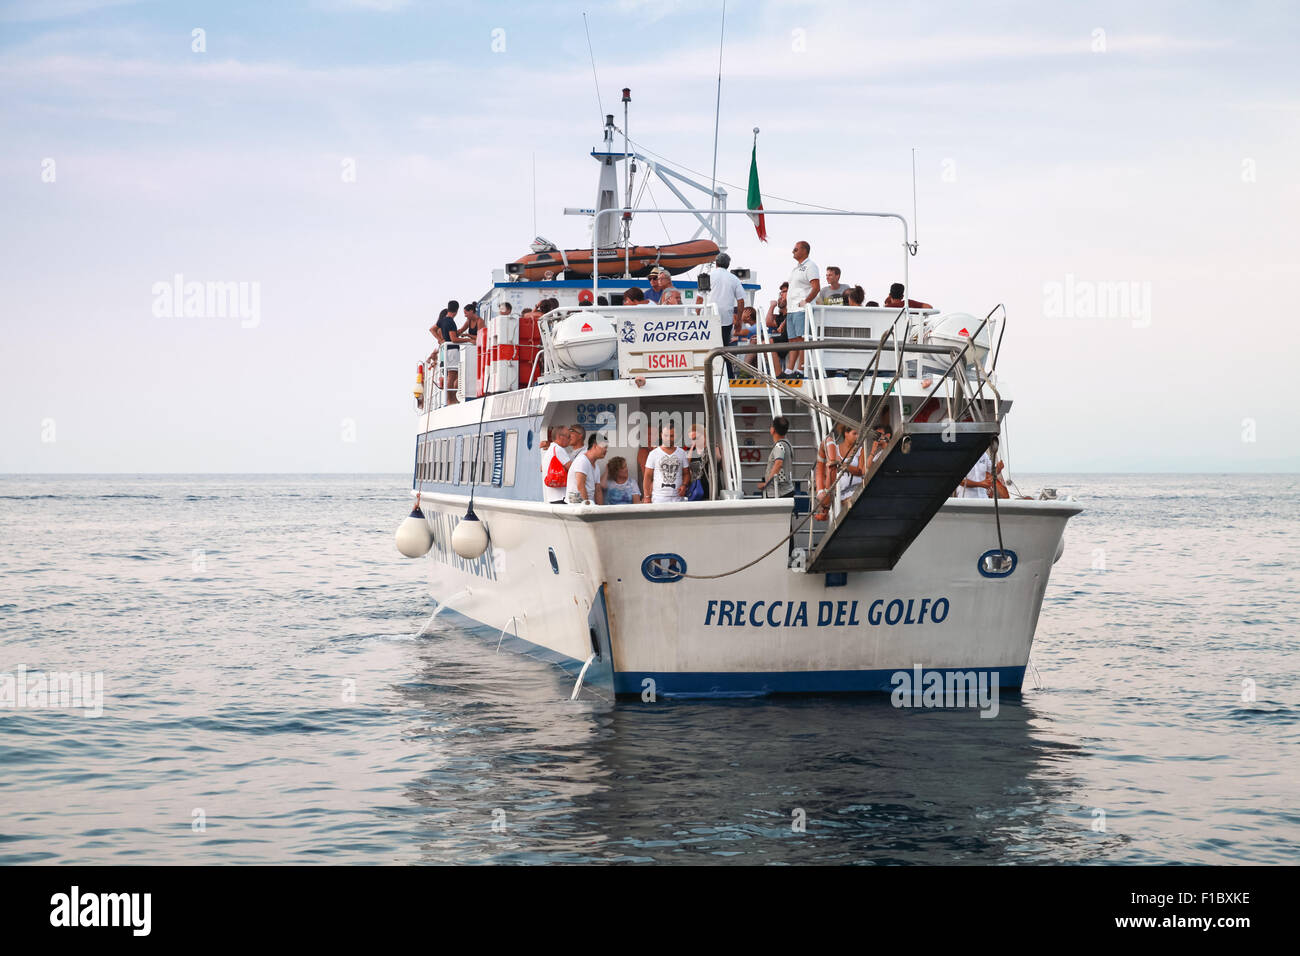 Lacco Ameno, Italia - 14 agosto 2015: Partenza del bianco nave turistica per escursioni in mare operati da Captain Morgan, Ischia Foto Stock